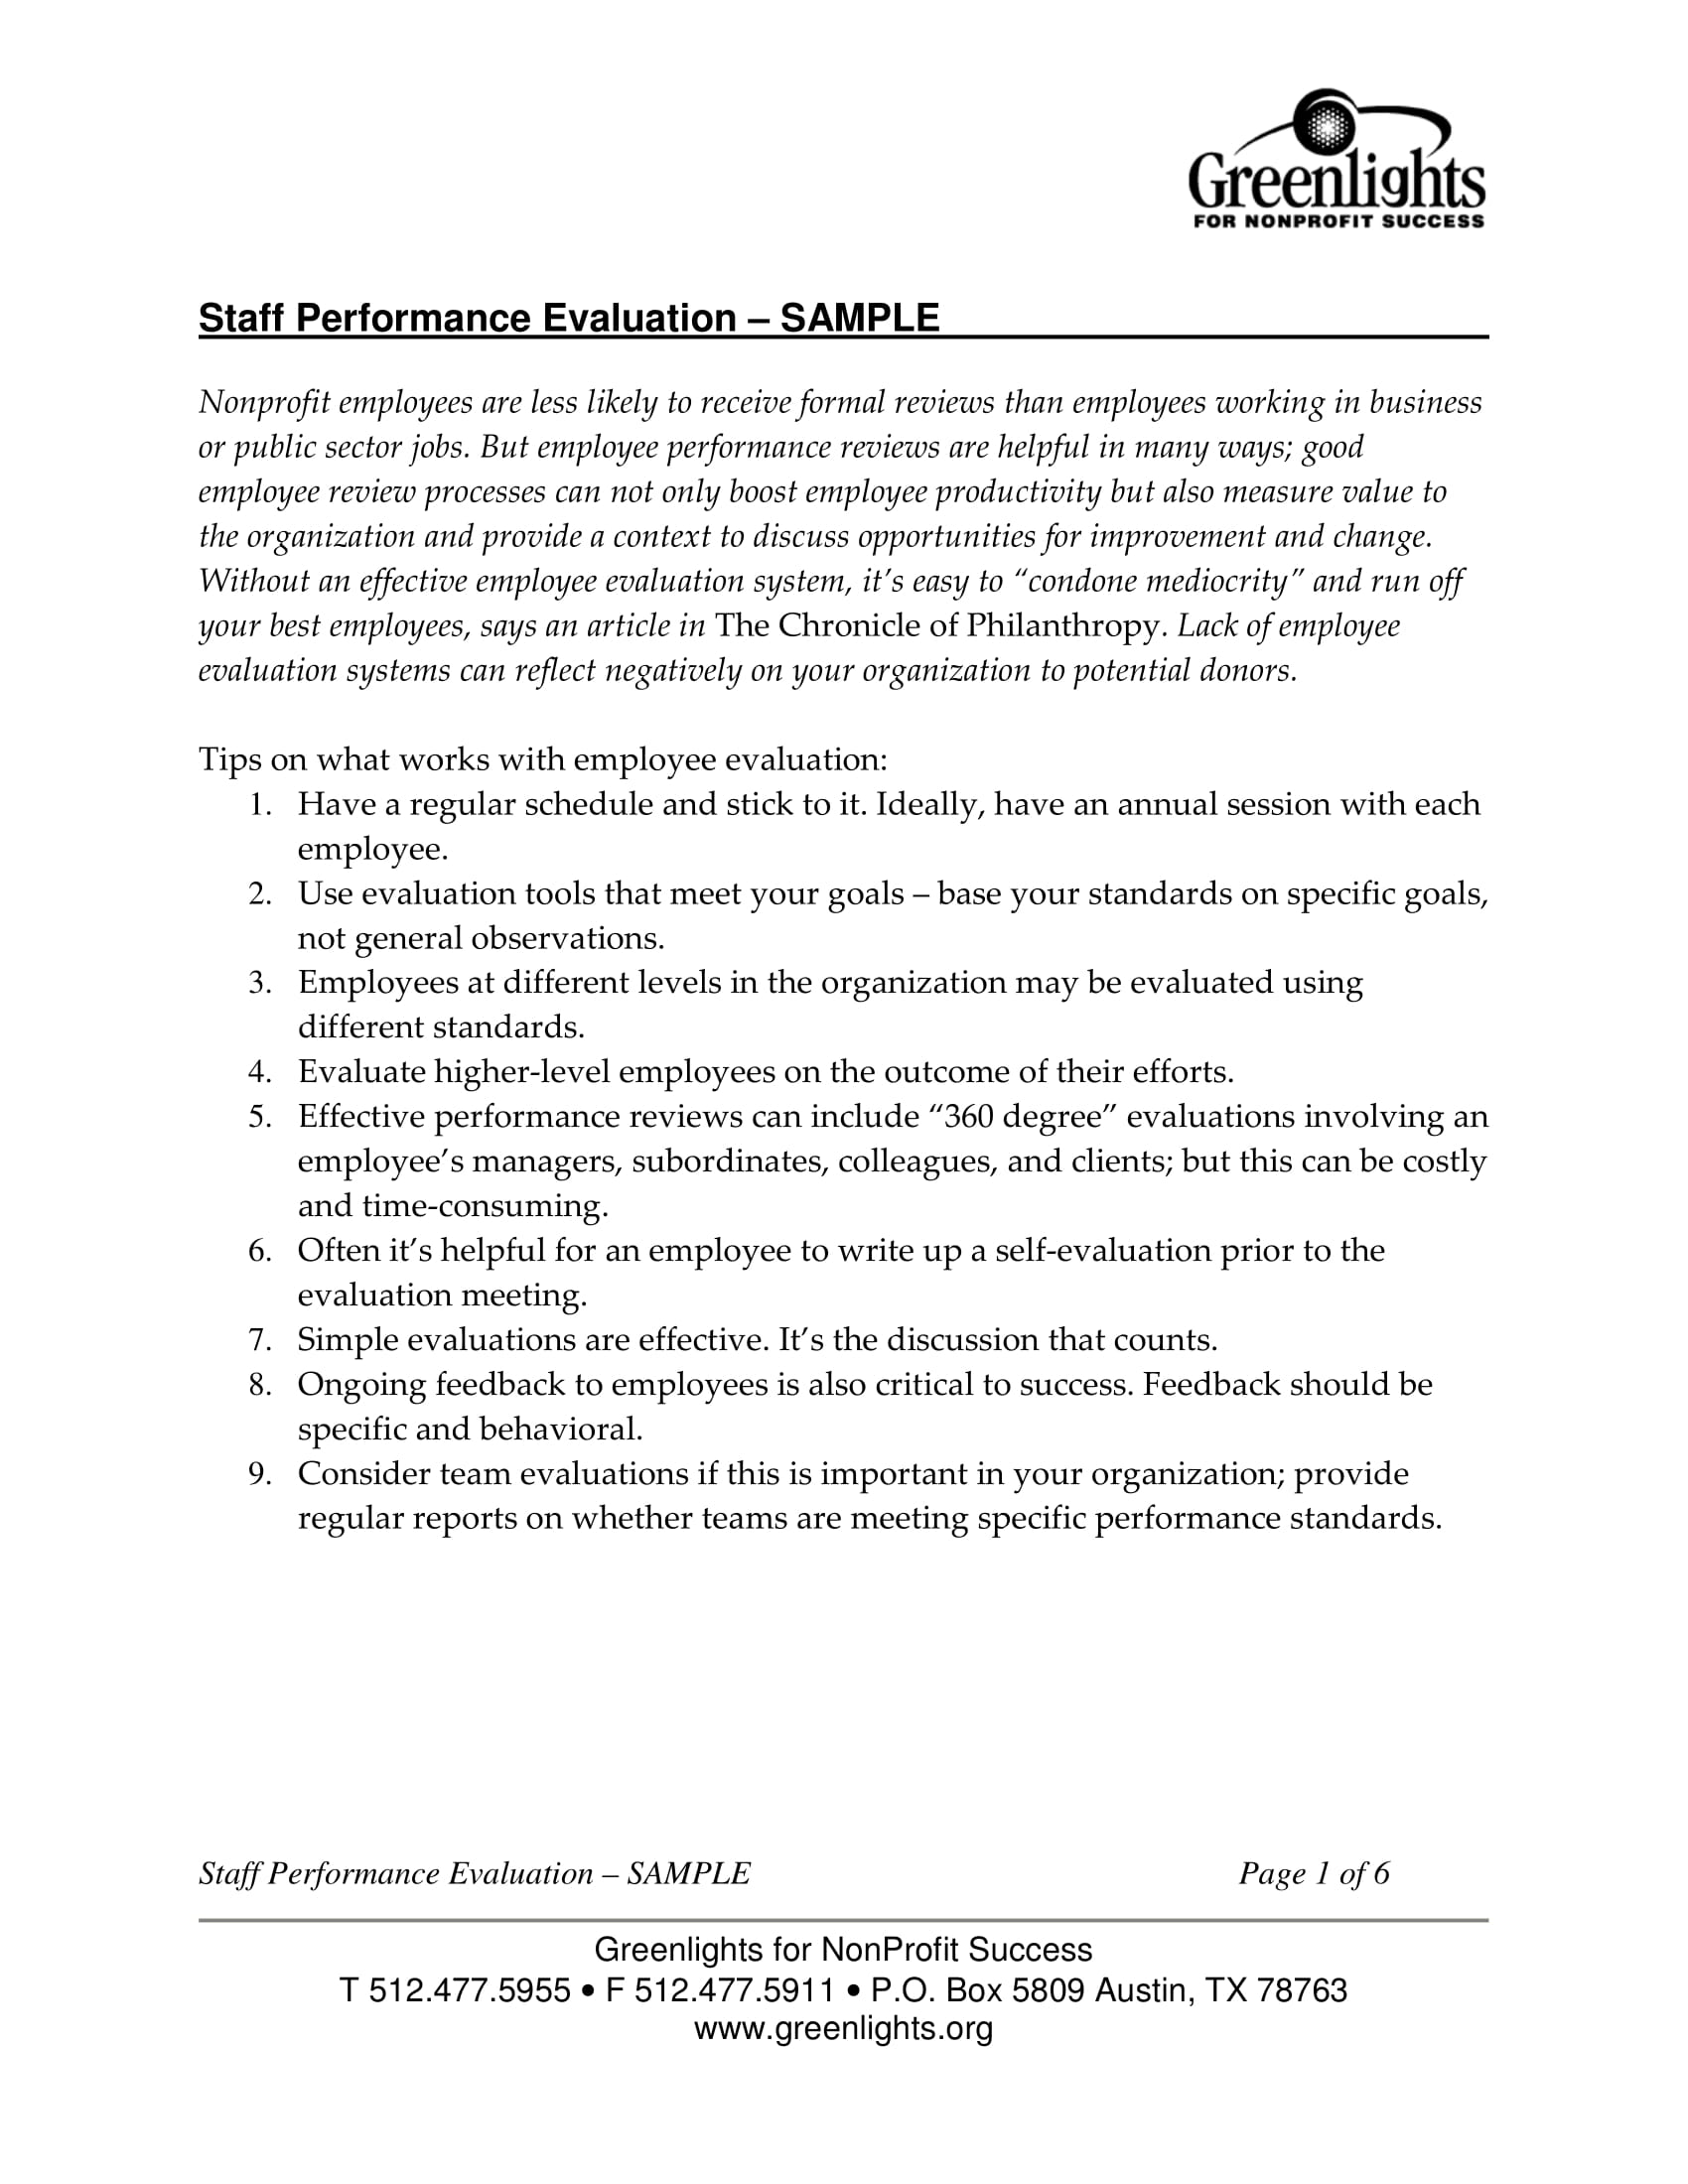 staff performance evaluation sample